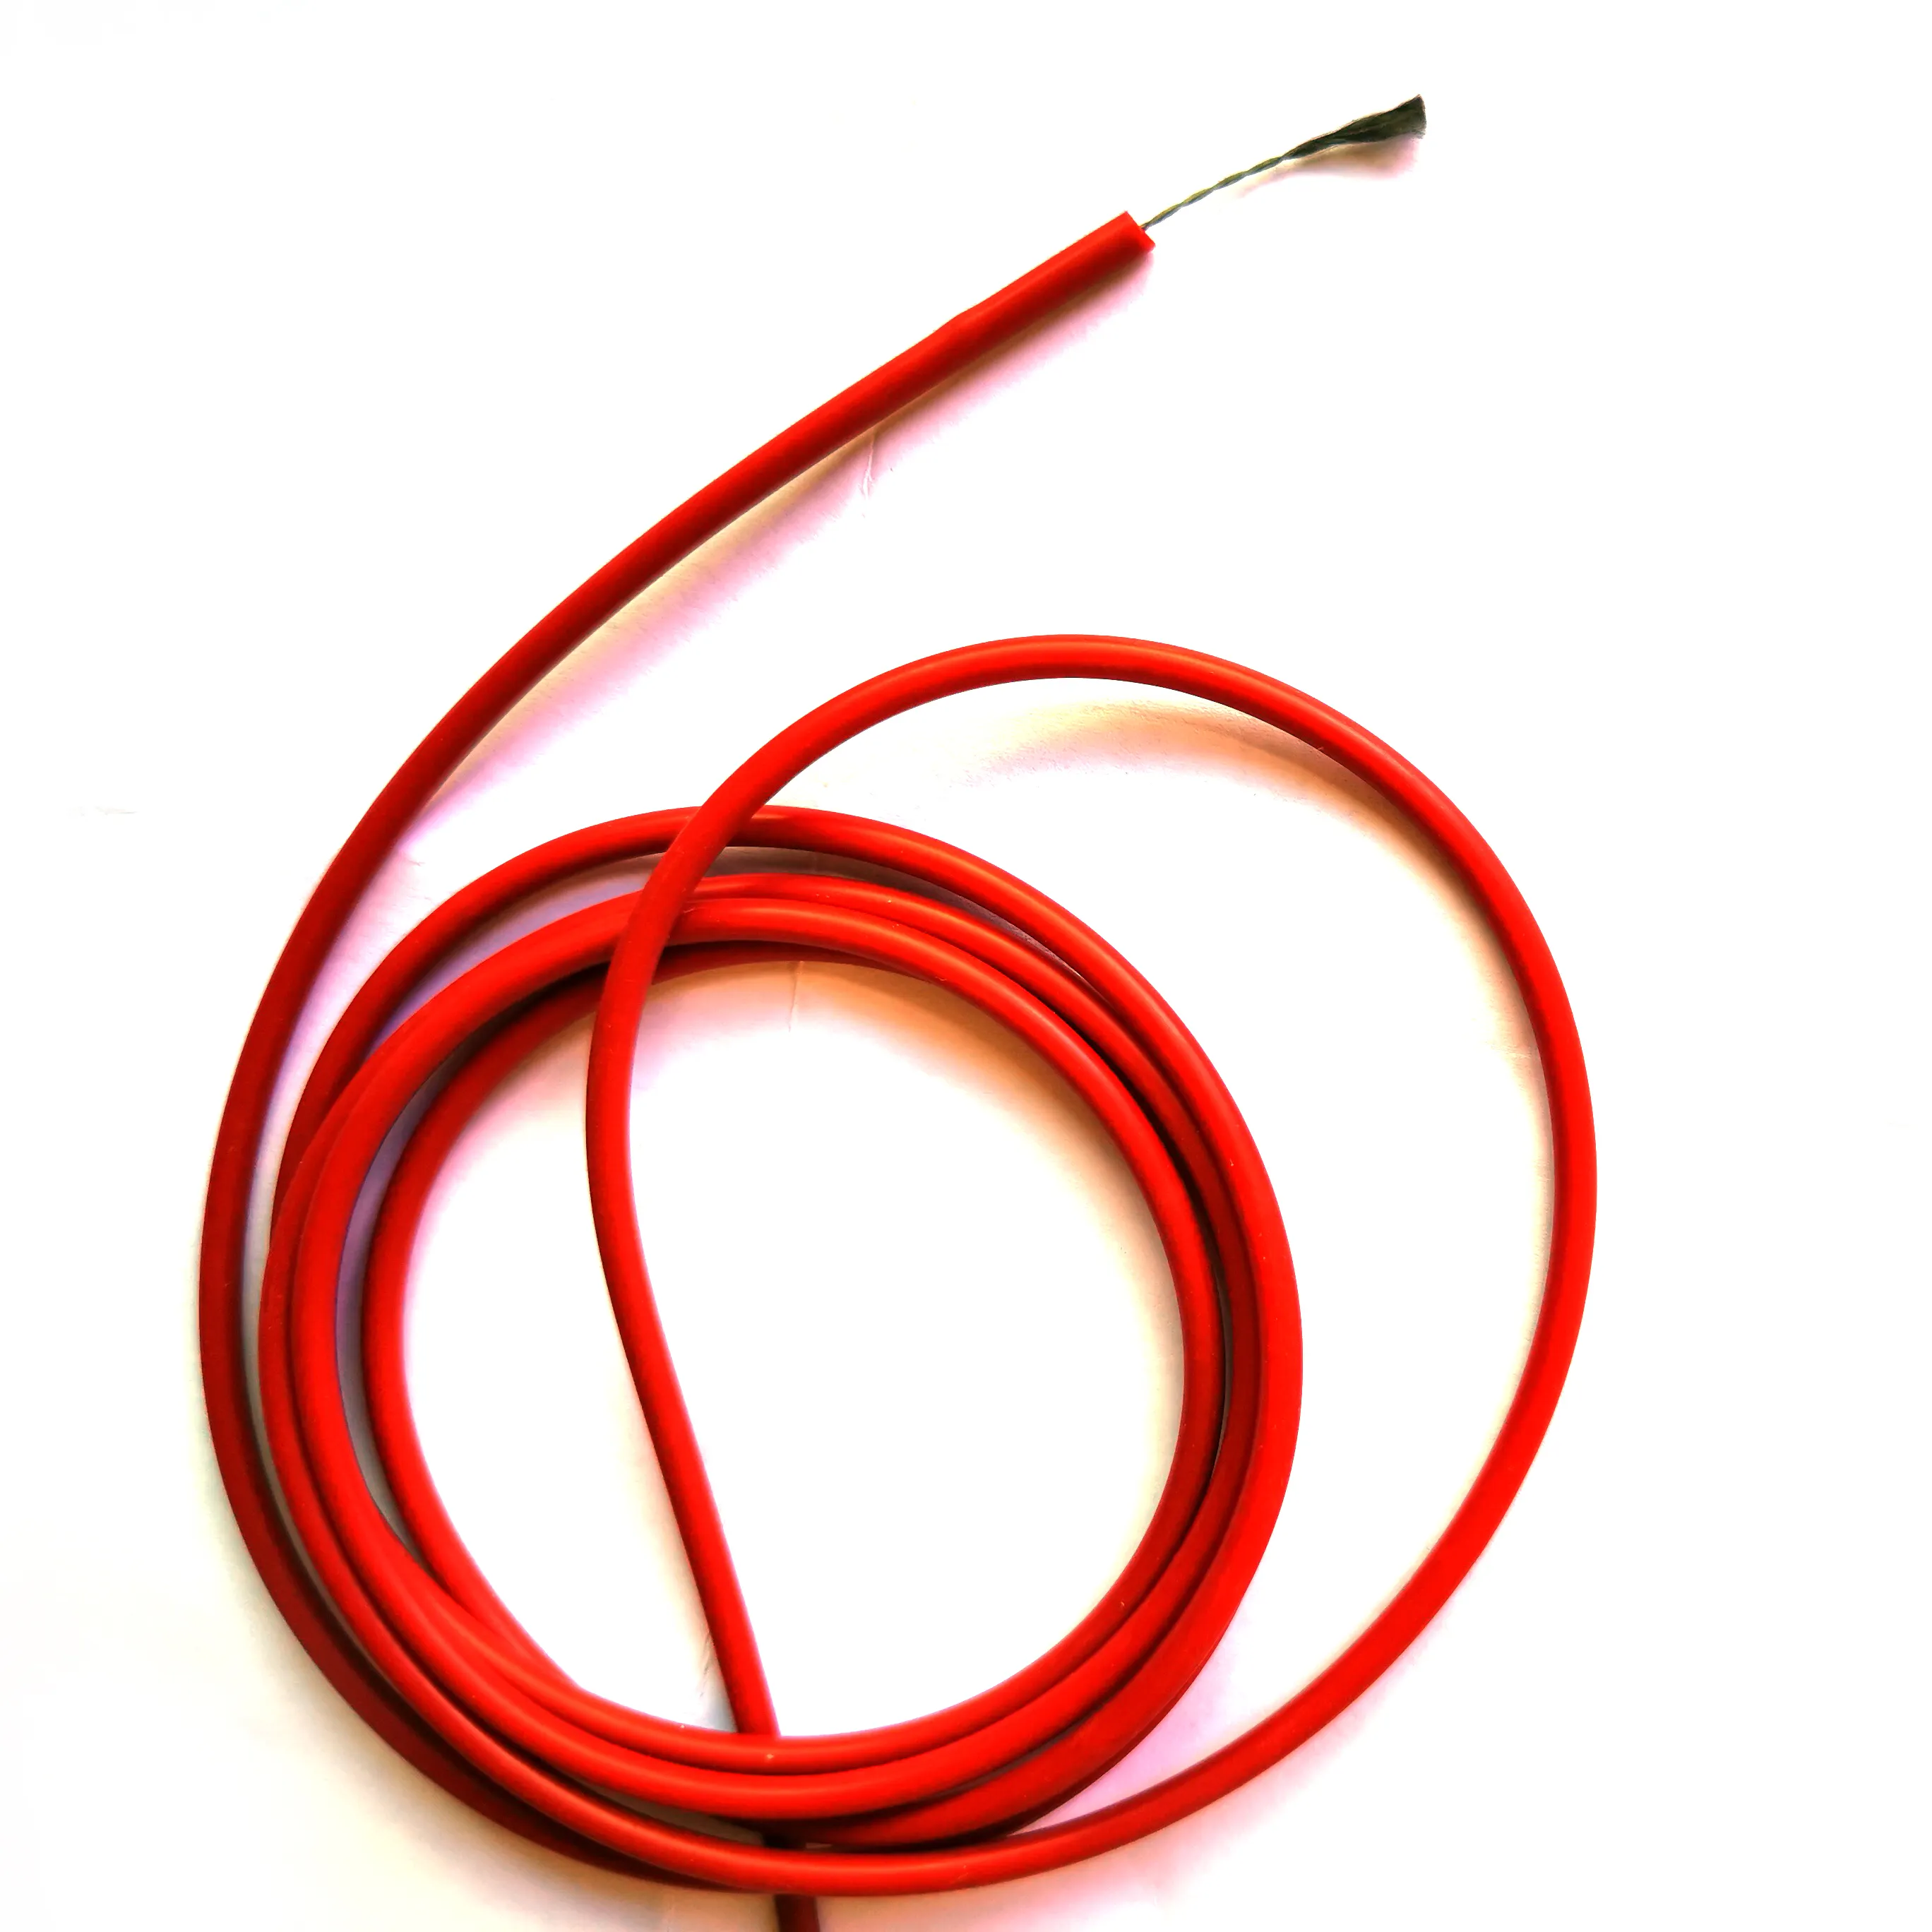 Câble chauffant en Silicone et fibre métallique, revêtement métallique en acier inoxydable avec revêtement caoutchouc, 12k, 1k, 3k, 6k, 12k, 24k